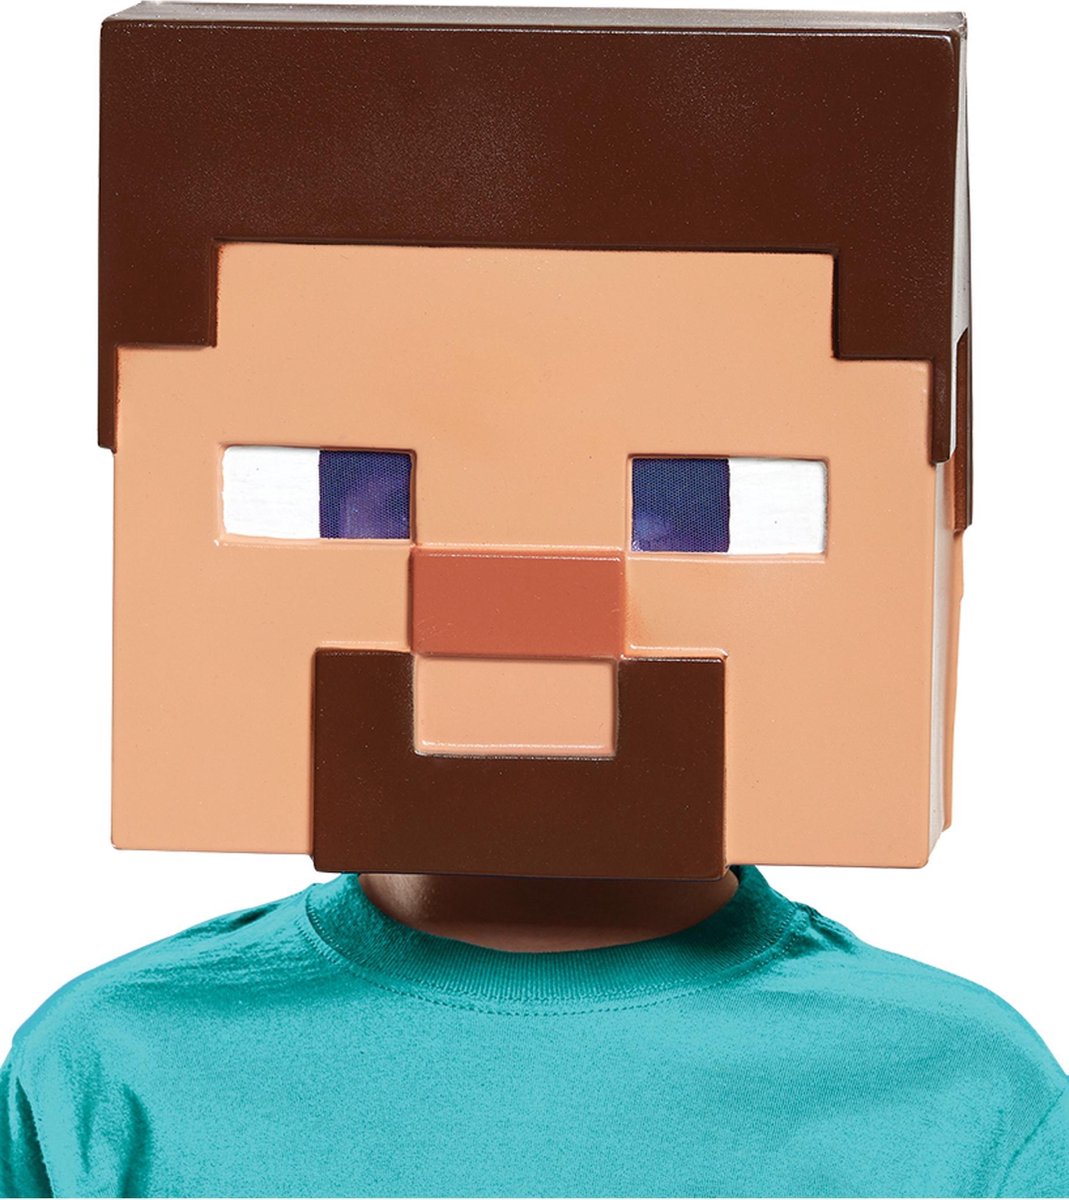 Masque de police LEGO pour enfants - Masque d'habillage